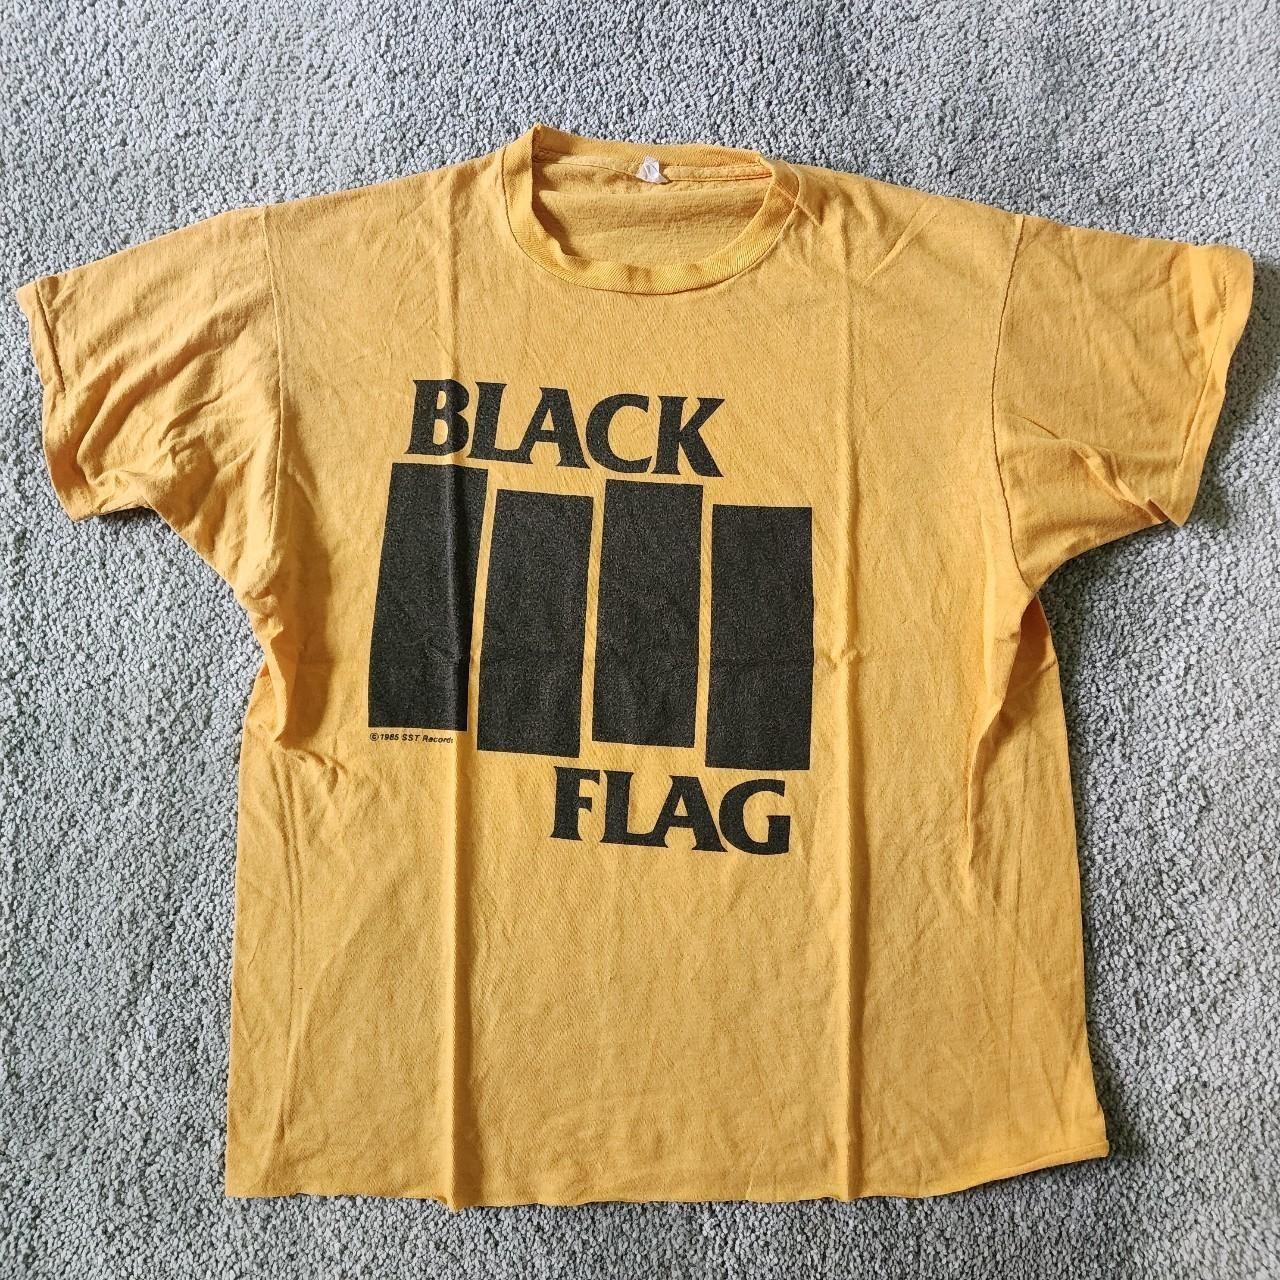 Vintage 80s Black Flag T-Shirt - Depop